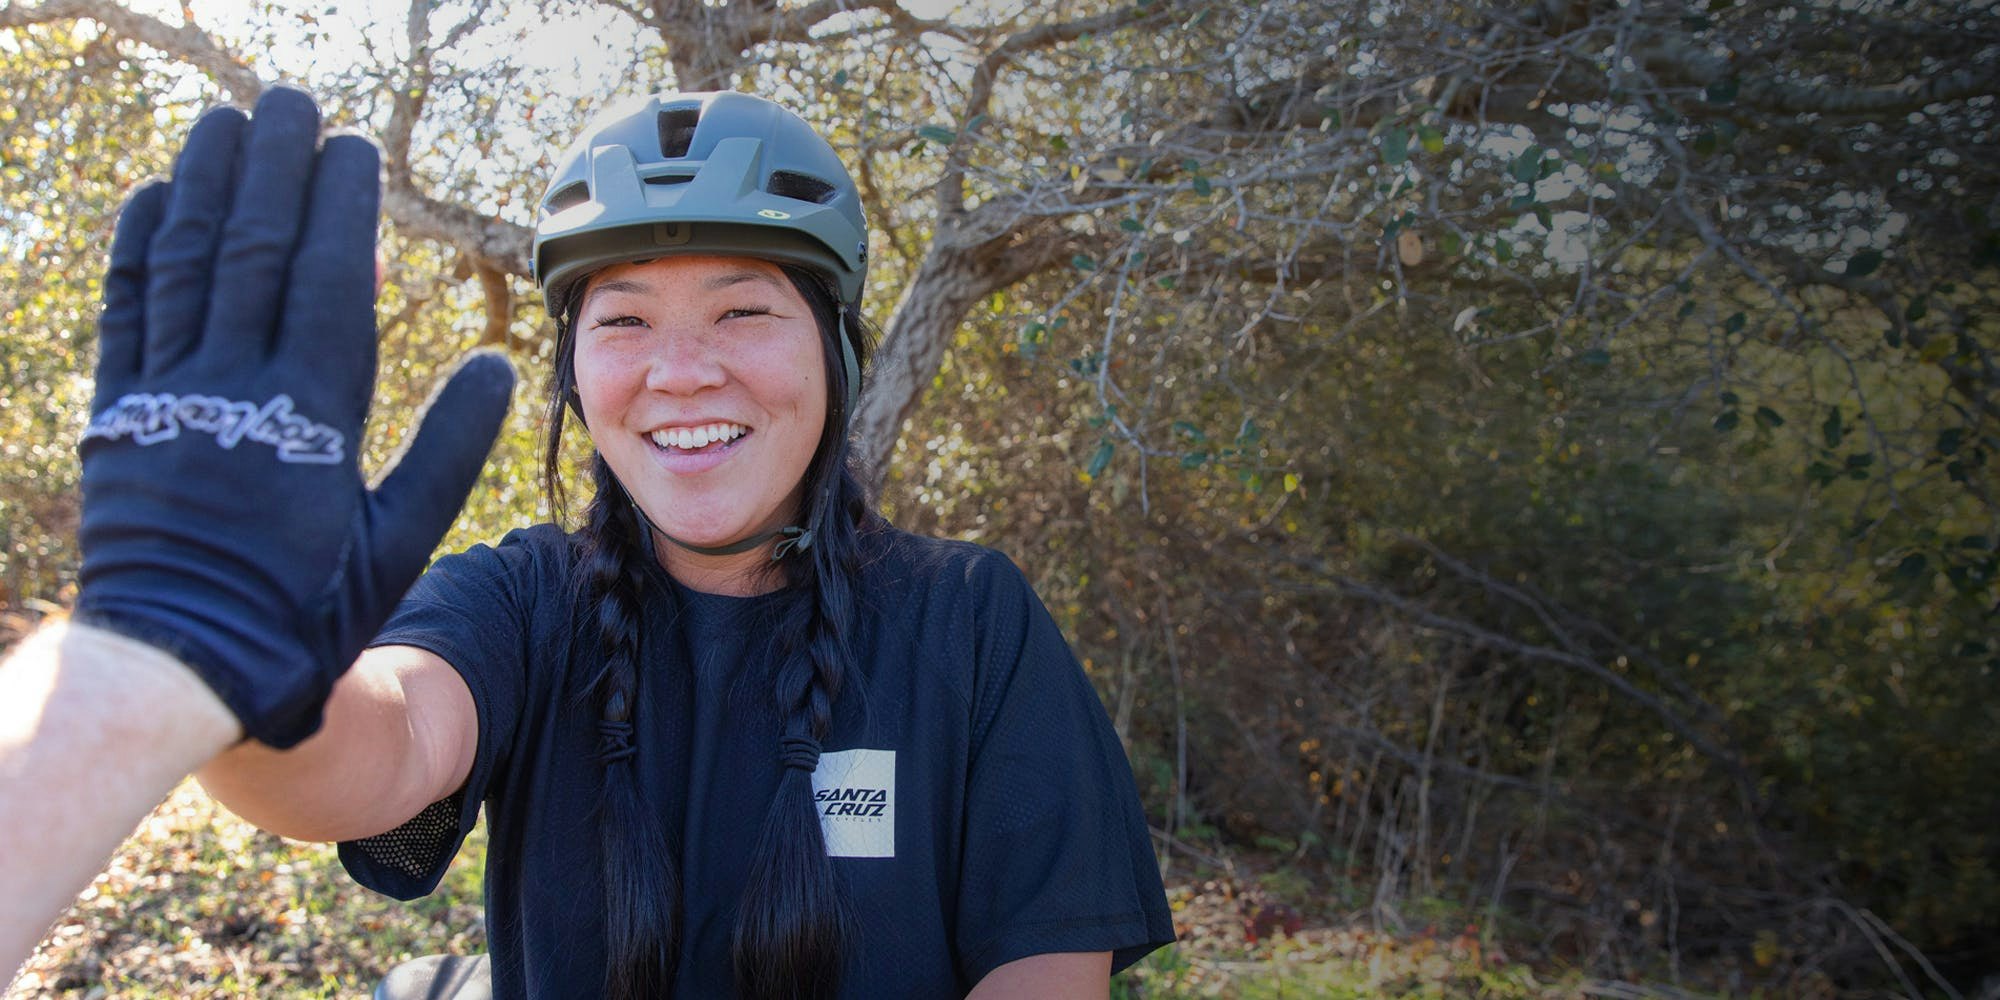 Santa Cruz Bicycles employee Sarah Bietsch high fiving a photographer